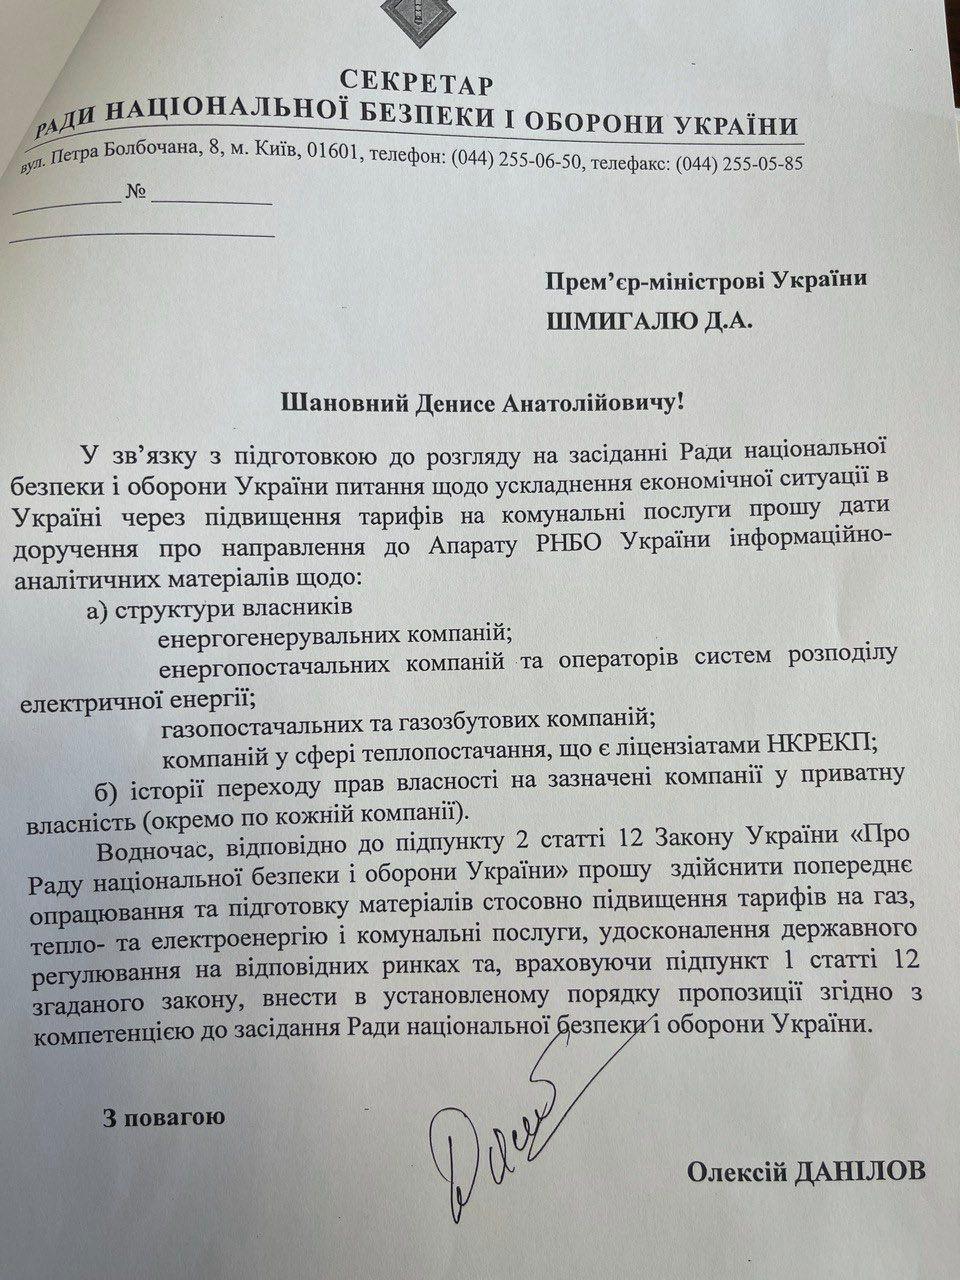 Секретарь СНБО Данилов обратился к премьеру Шиыгалю